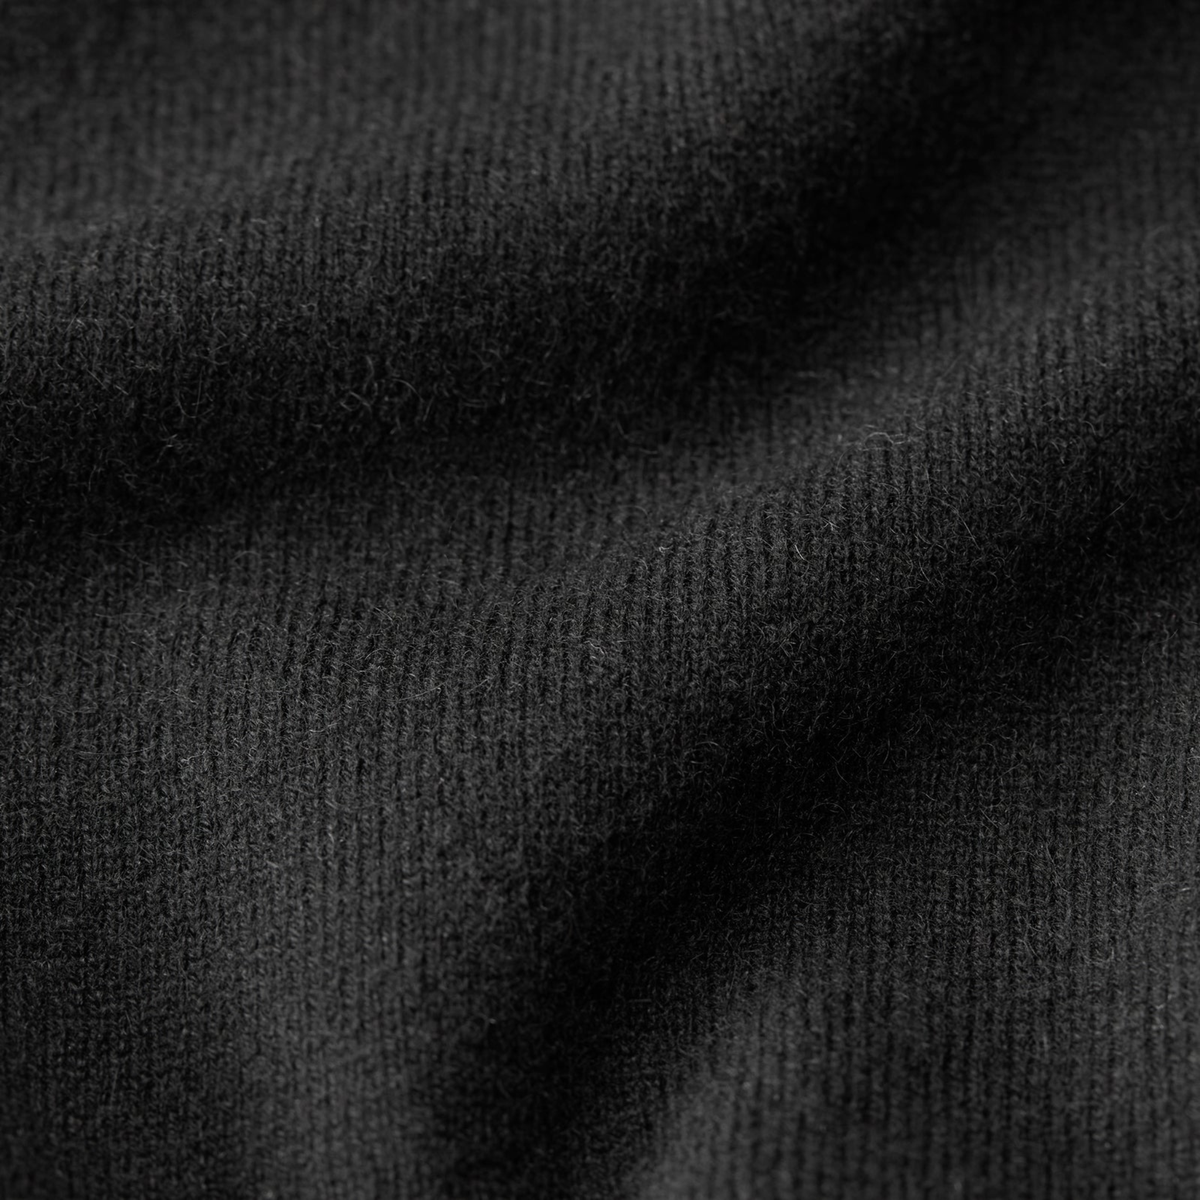 Fabric Closeup of Black Sferra Intimita Long Sleeve Top